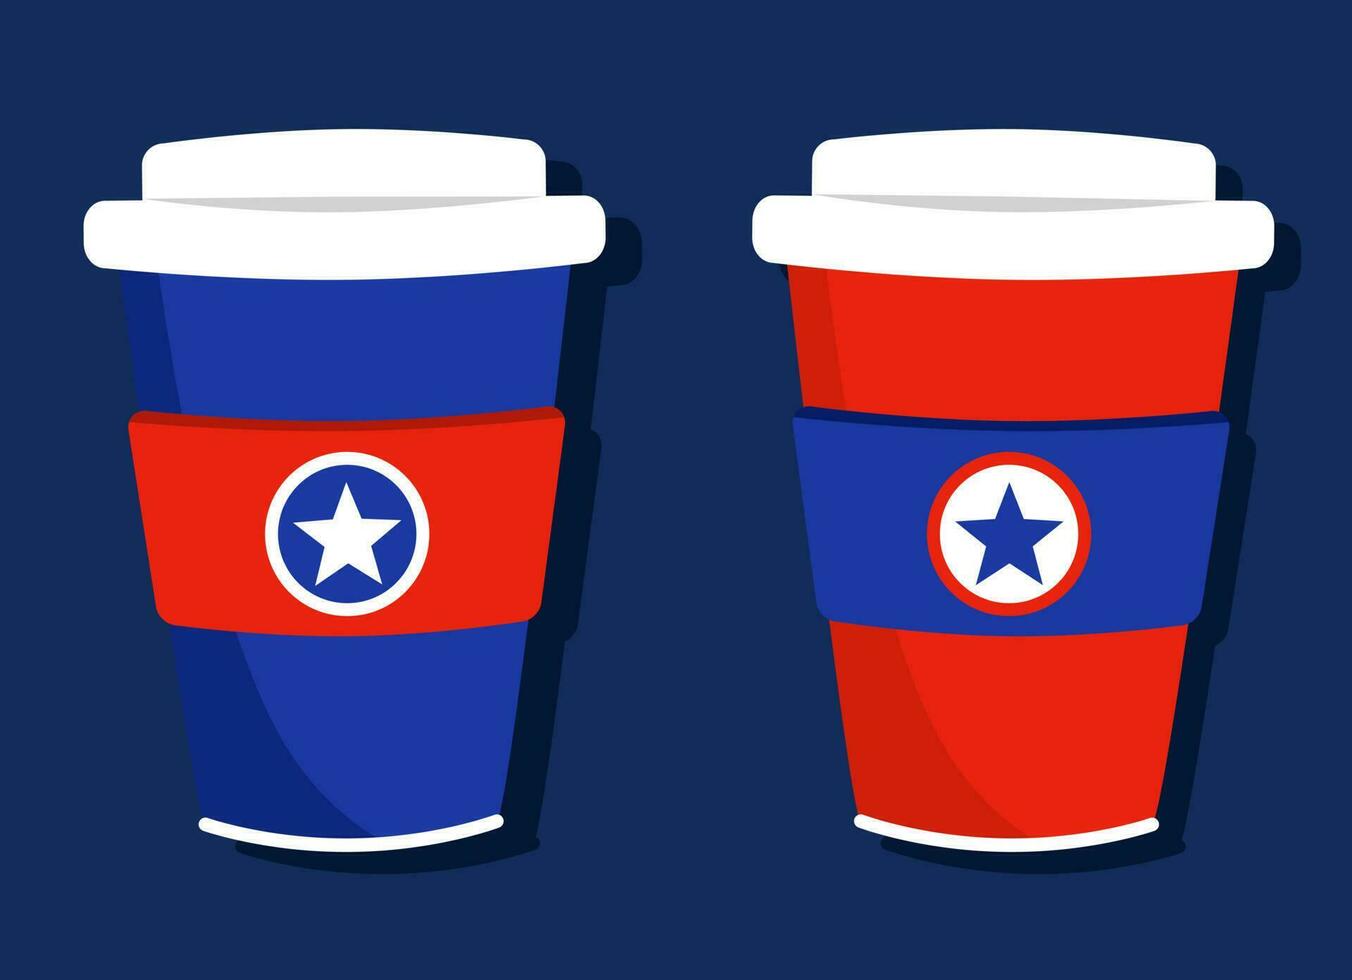 illustratie van cups met onafhankelijkheid dag symbolen en kleuren in vlak stijl. reeks van karton cups in rood, blauw en wit kleuren met een ster. vector illustratie